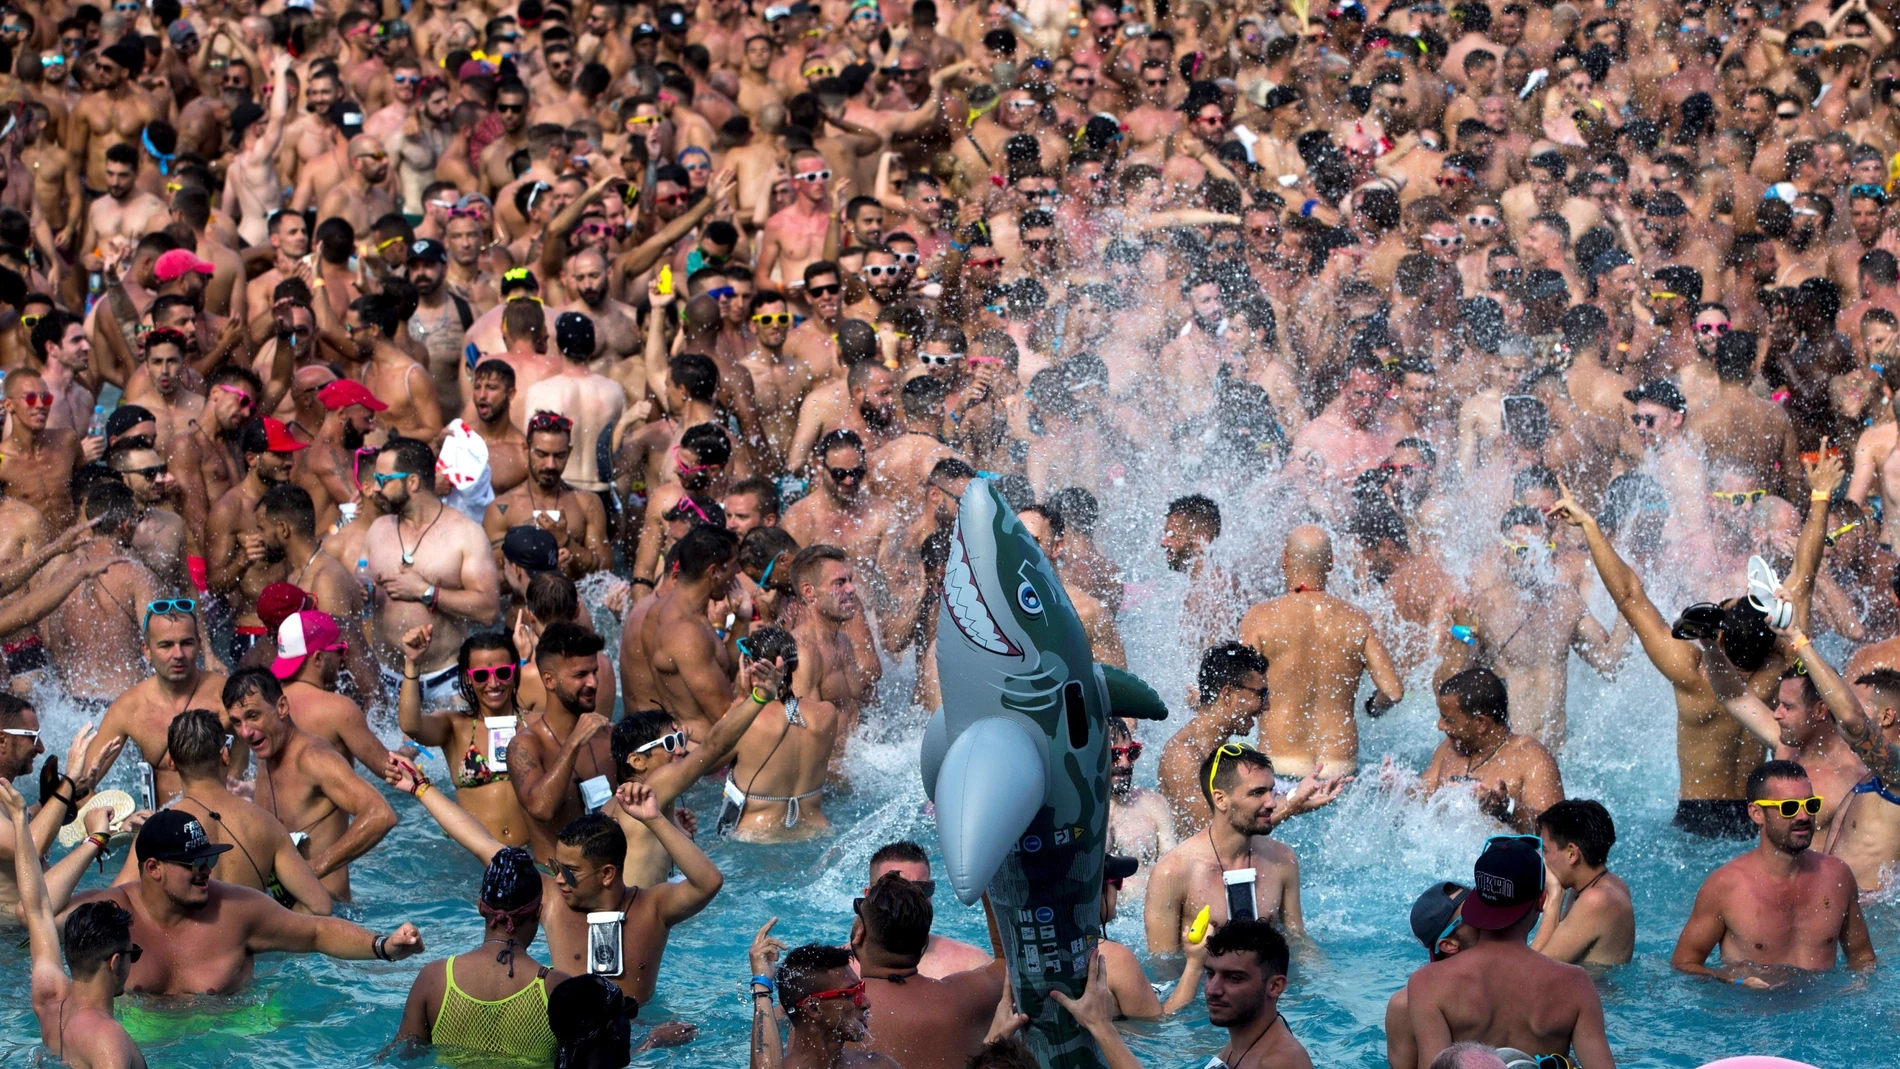 Miles de personas celebran el ''Water Park Day'' la fiesta mas icónica del Circuit Festival (en Villasar del Mar, Barcelona), uno de los eventos de música y ocio dirigidos al público LGBTI más importantes a nivel internacional